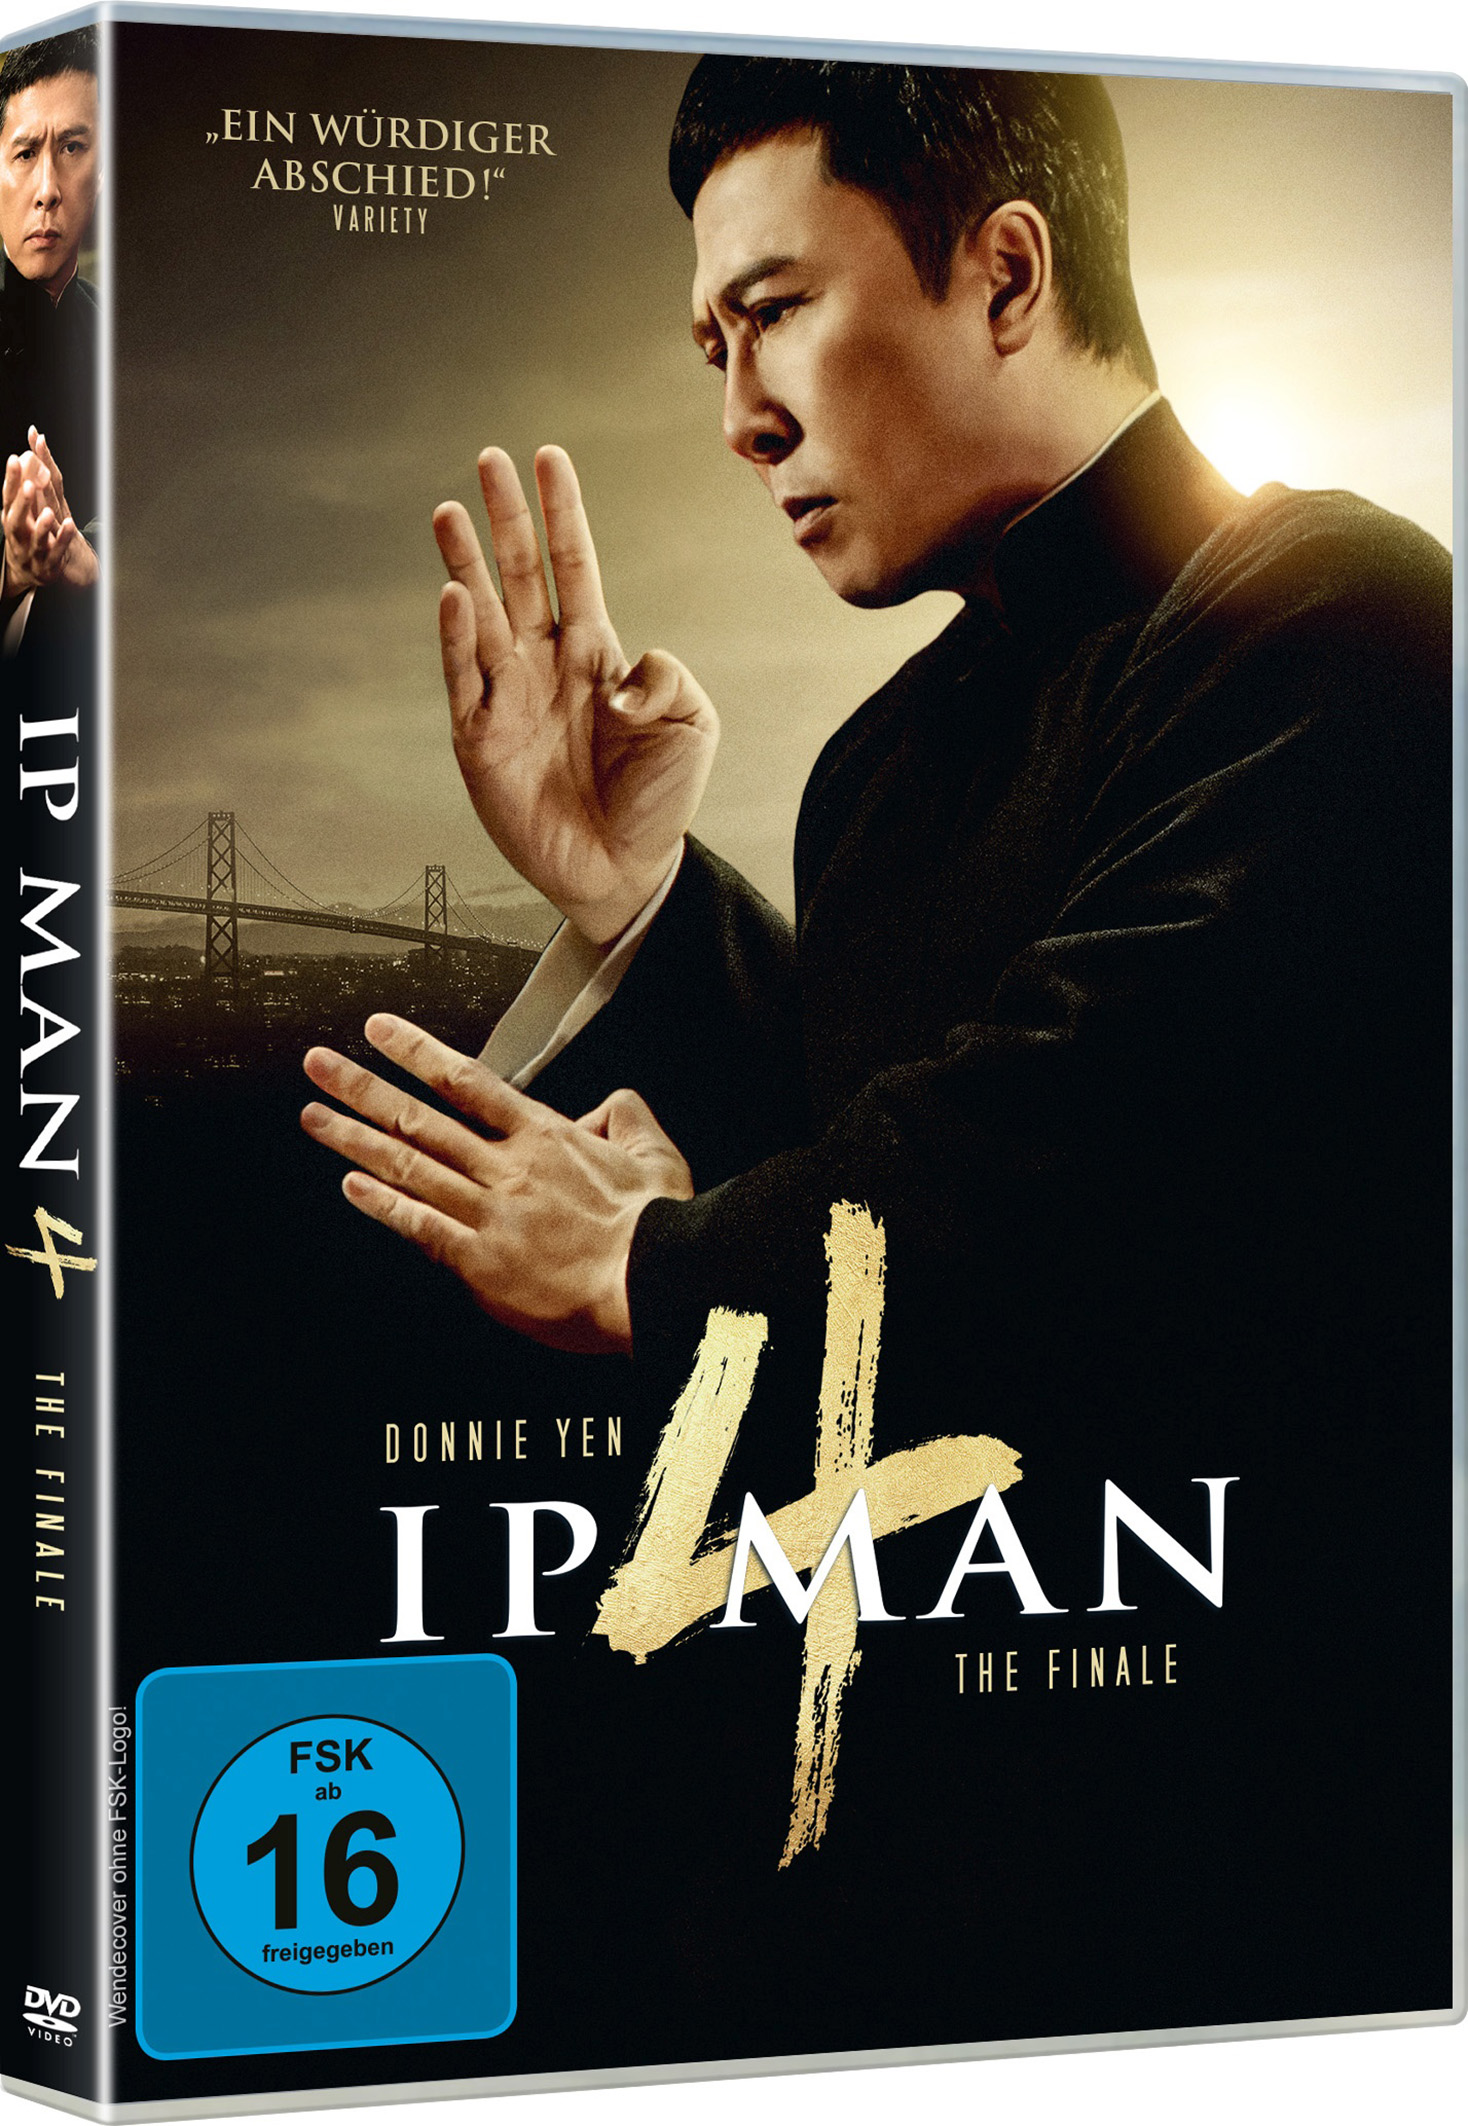 IP MAN 4 (DVD) Image 2